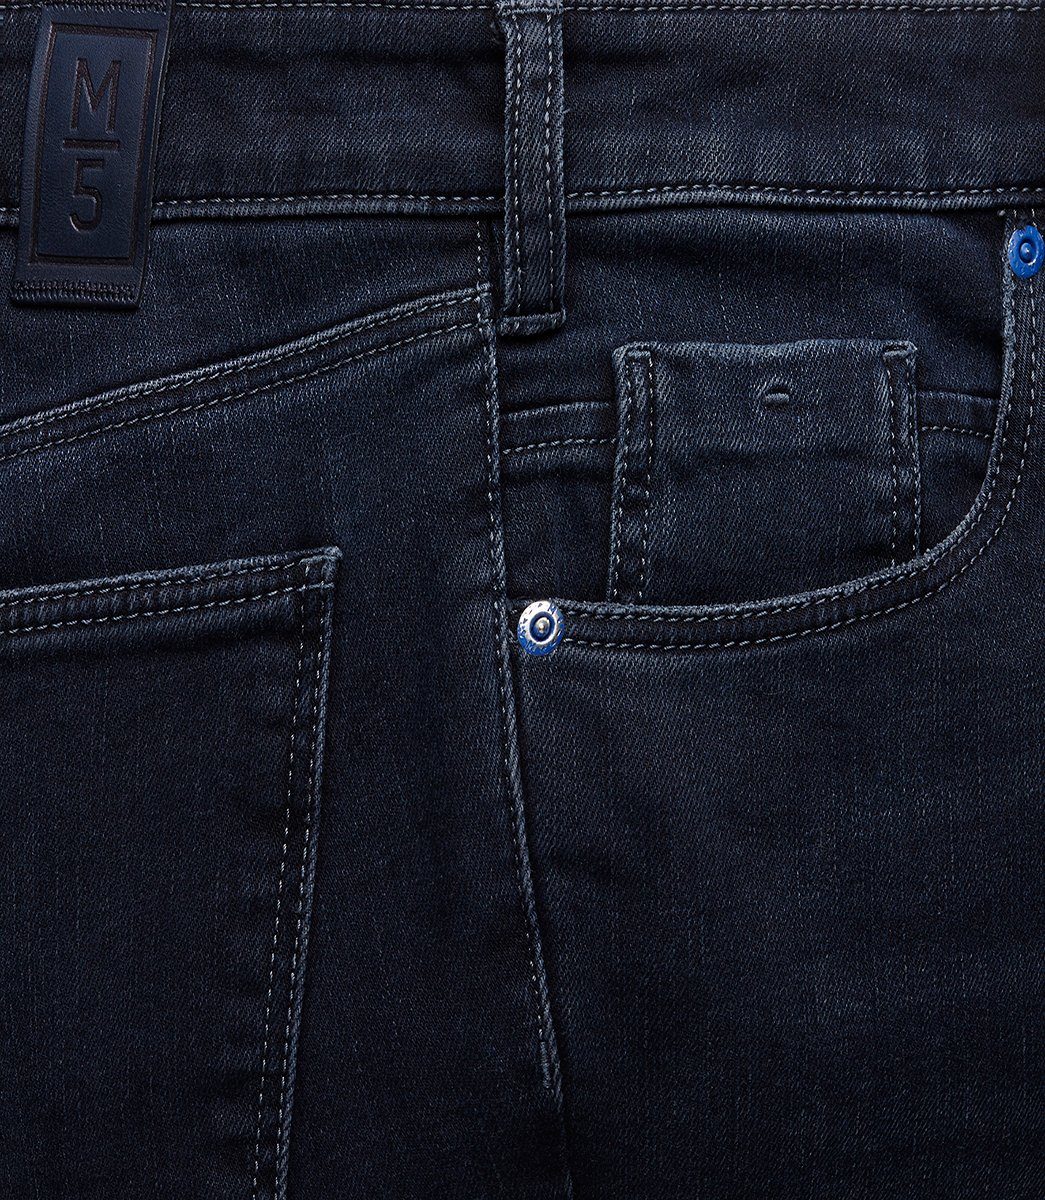 MEYER 5-Pocket-Jeans MEYER M5 blue SLIM blue 361-9-6228.18